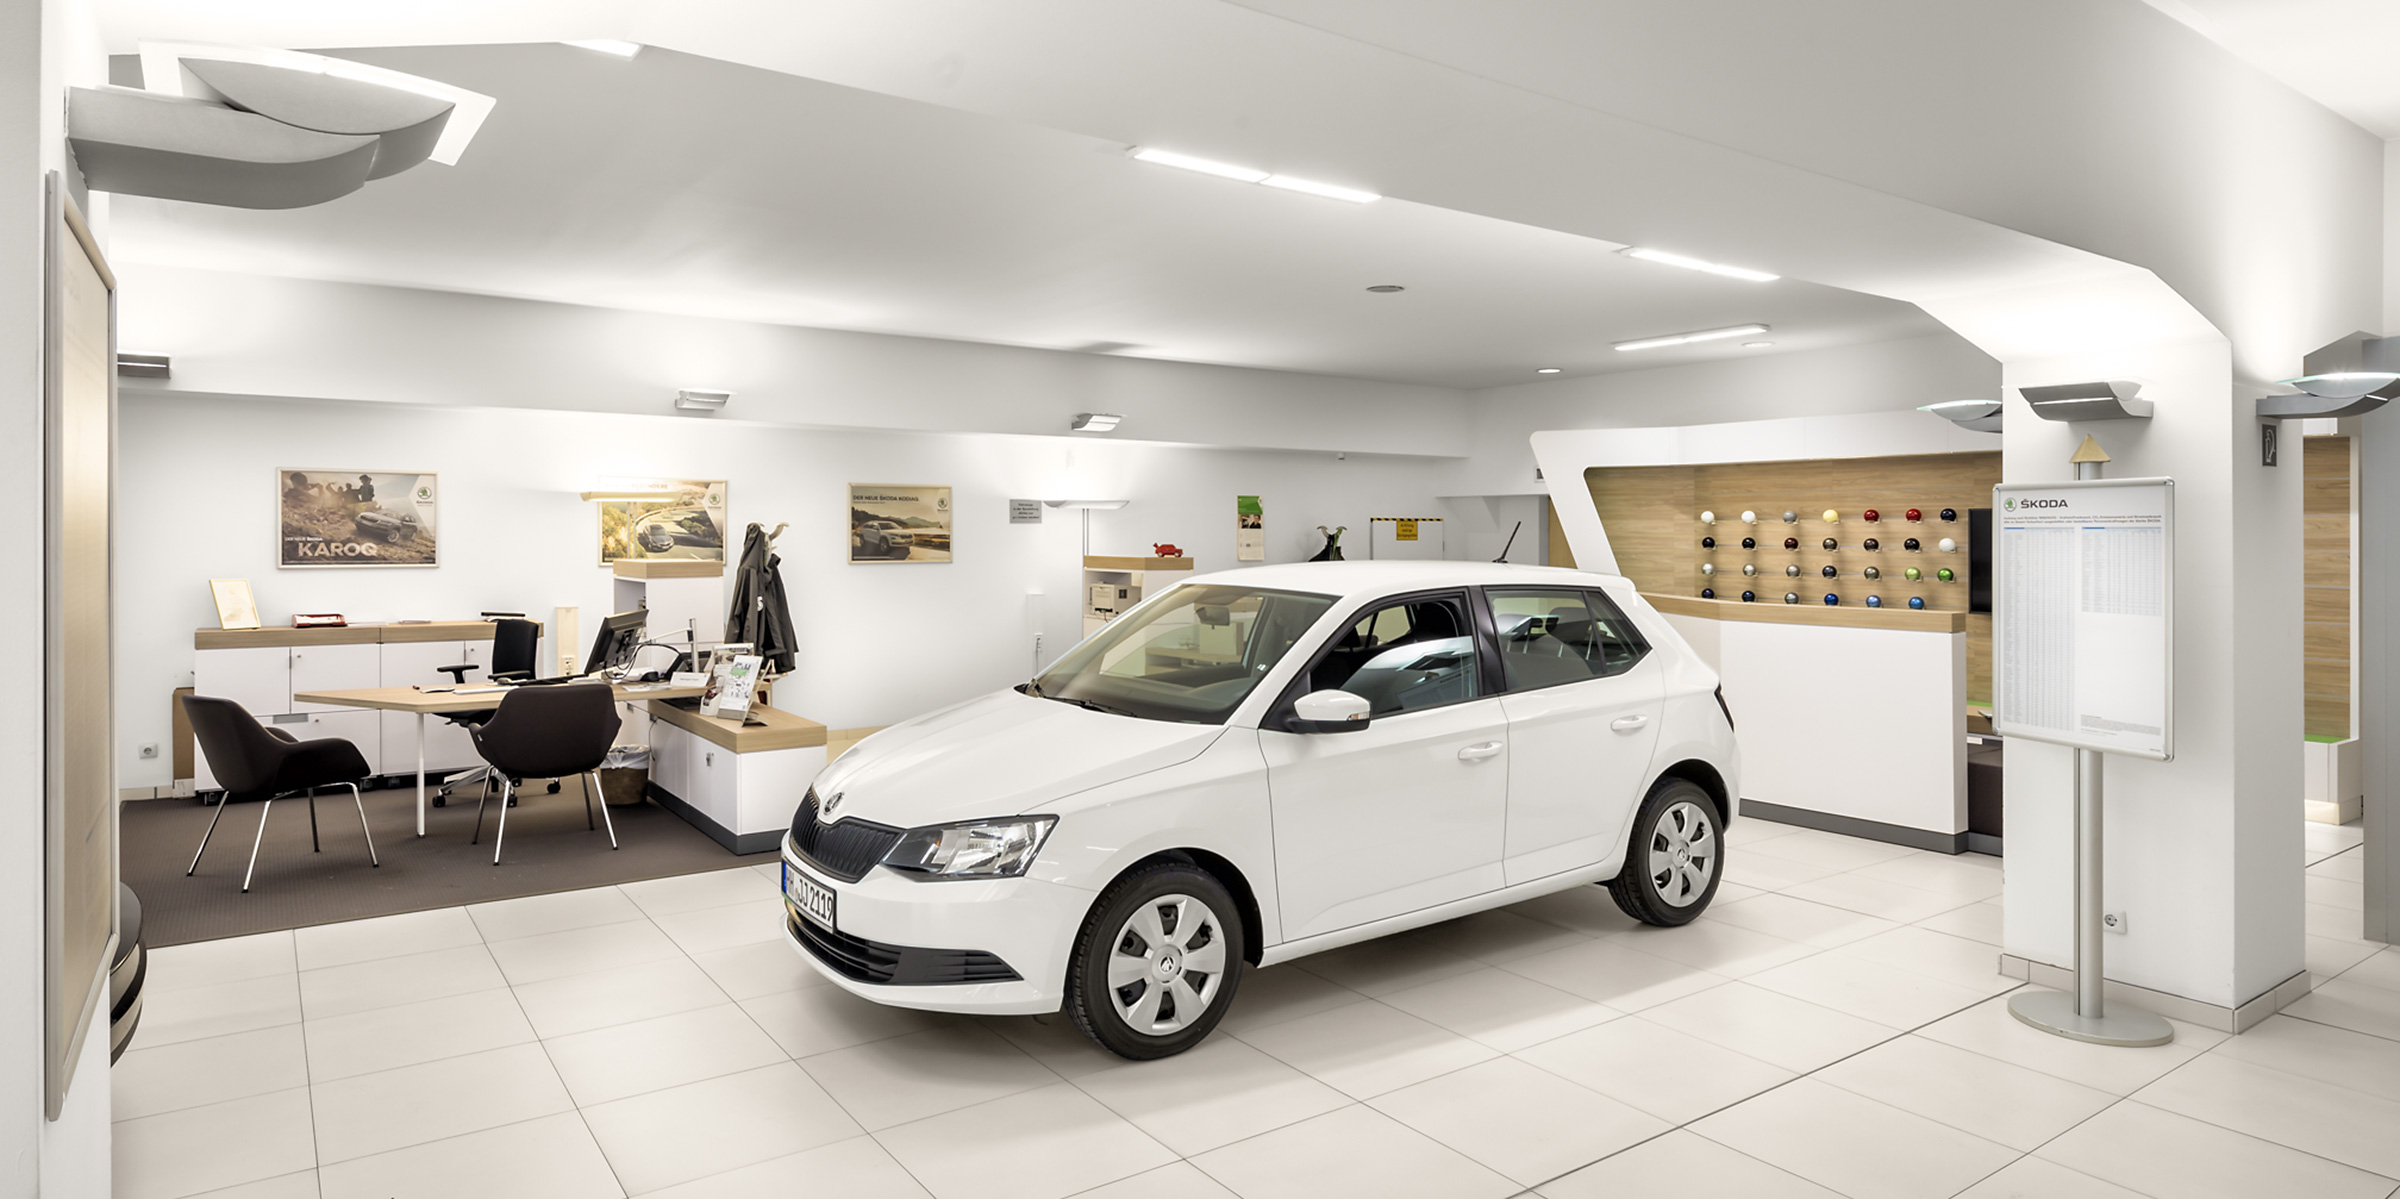 Dieses Werbefoto zeigt den Showroom eines Hamburger Autohauses.